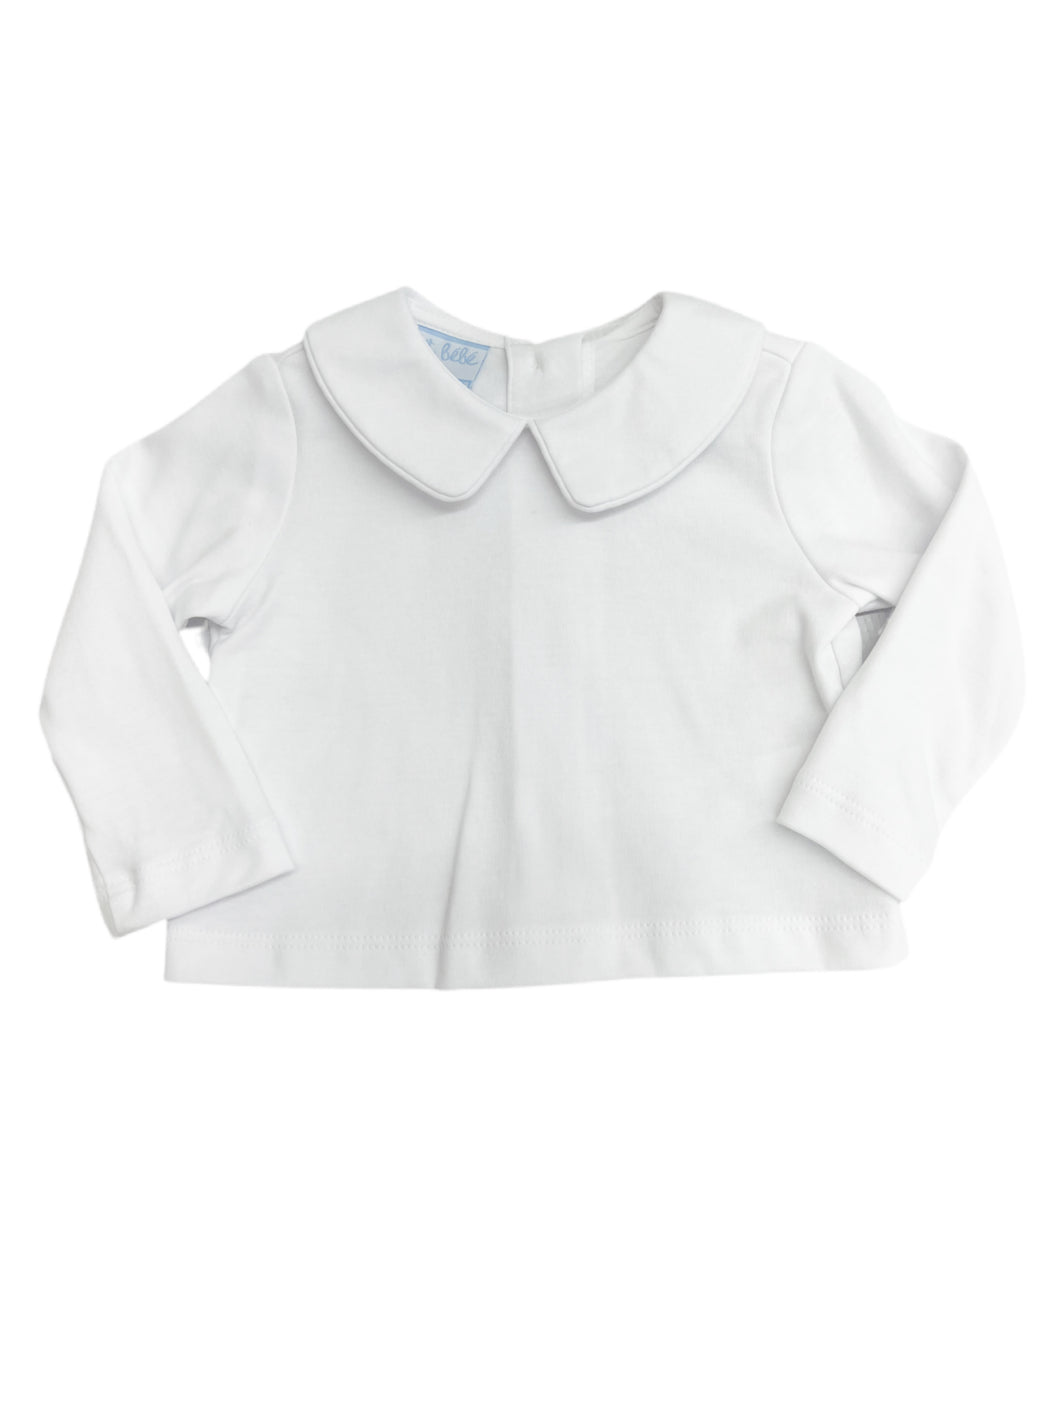 White Knit Peter Pan Shirt-LS